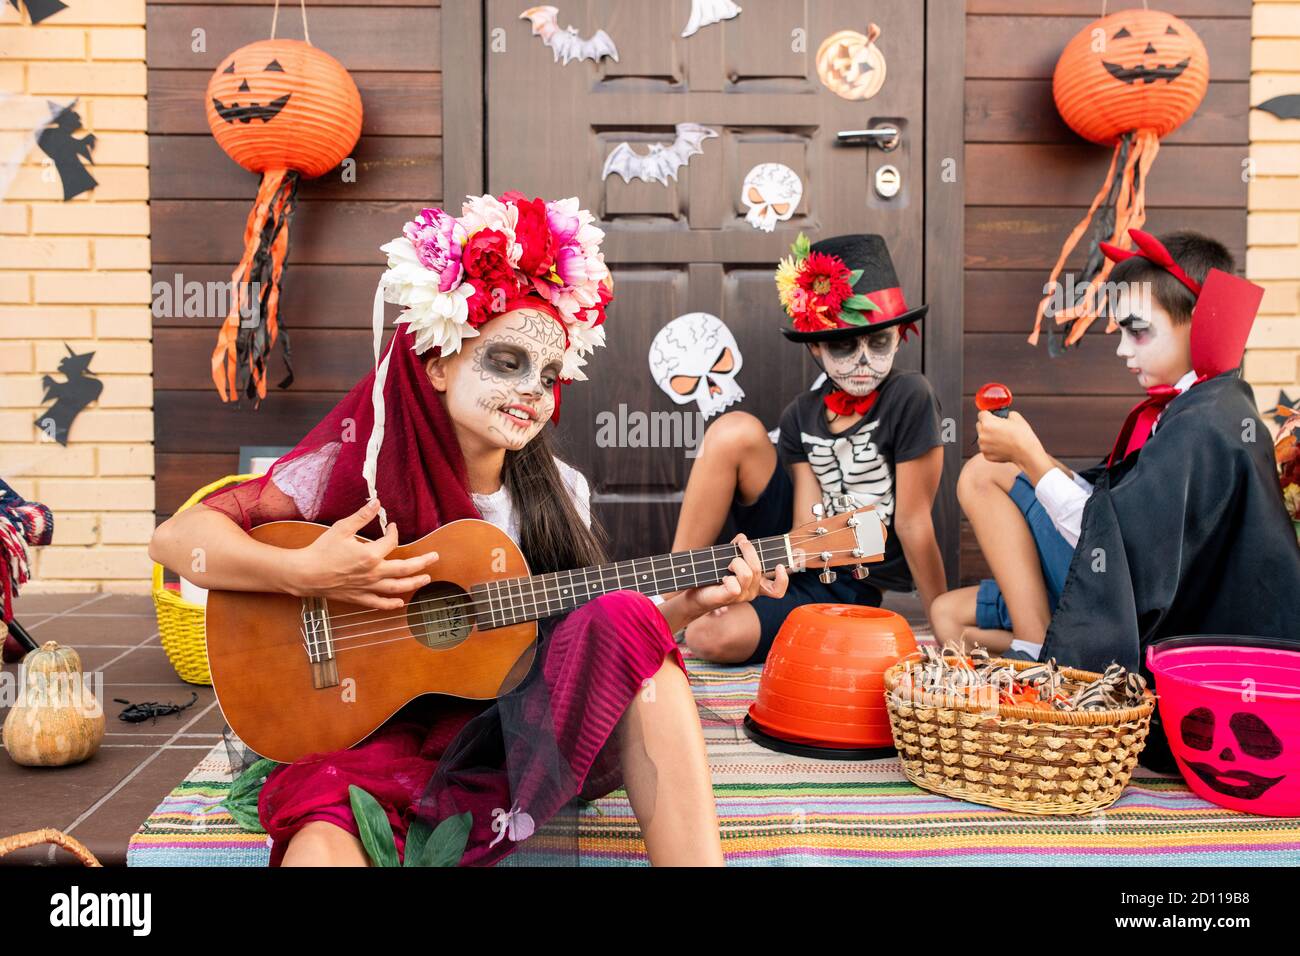 Ragazza carina in costume halloween seduta su scala, cantando e suonando la chitarra Foto Stock